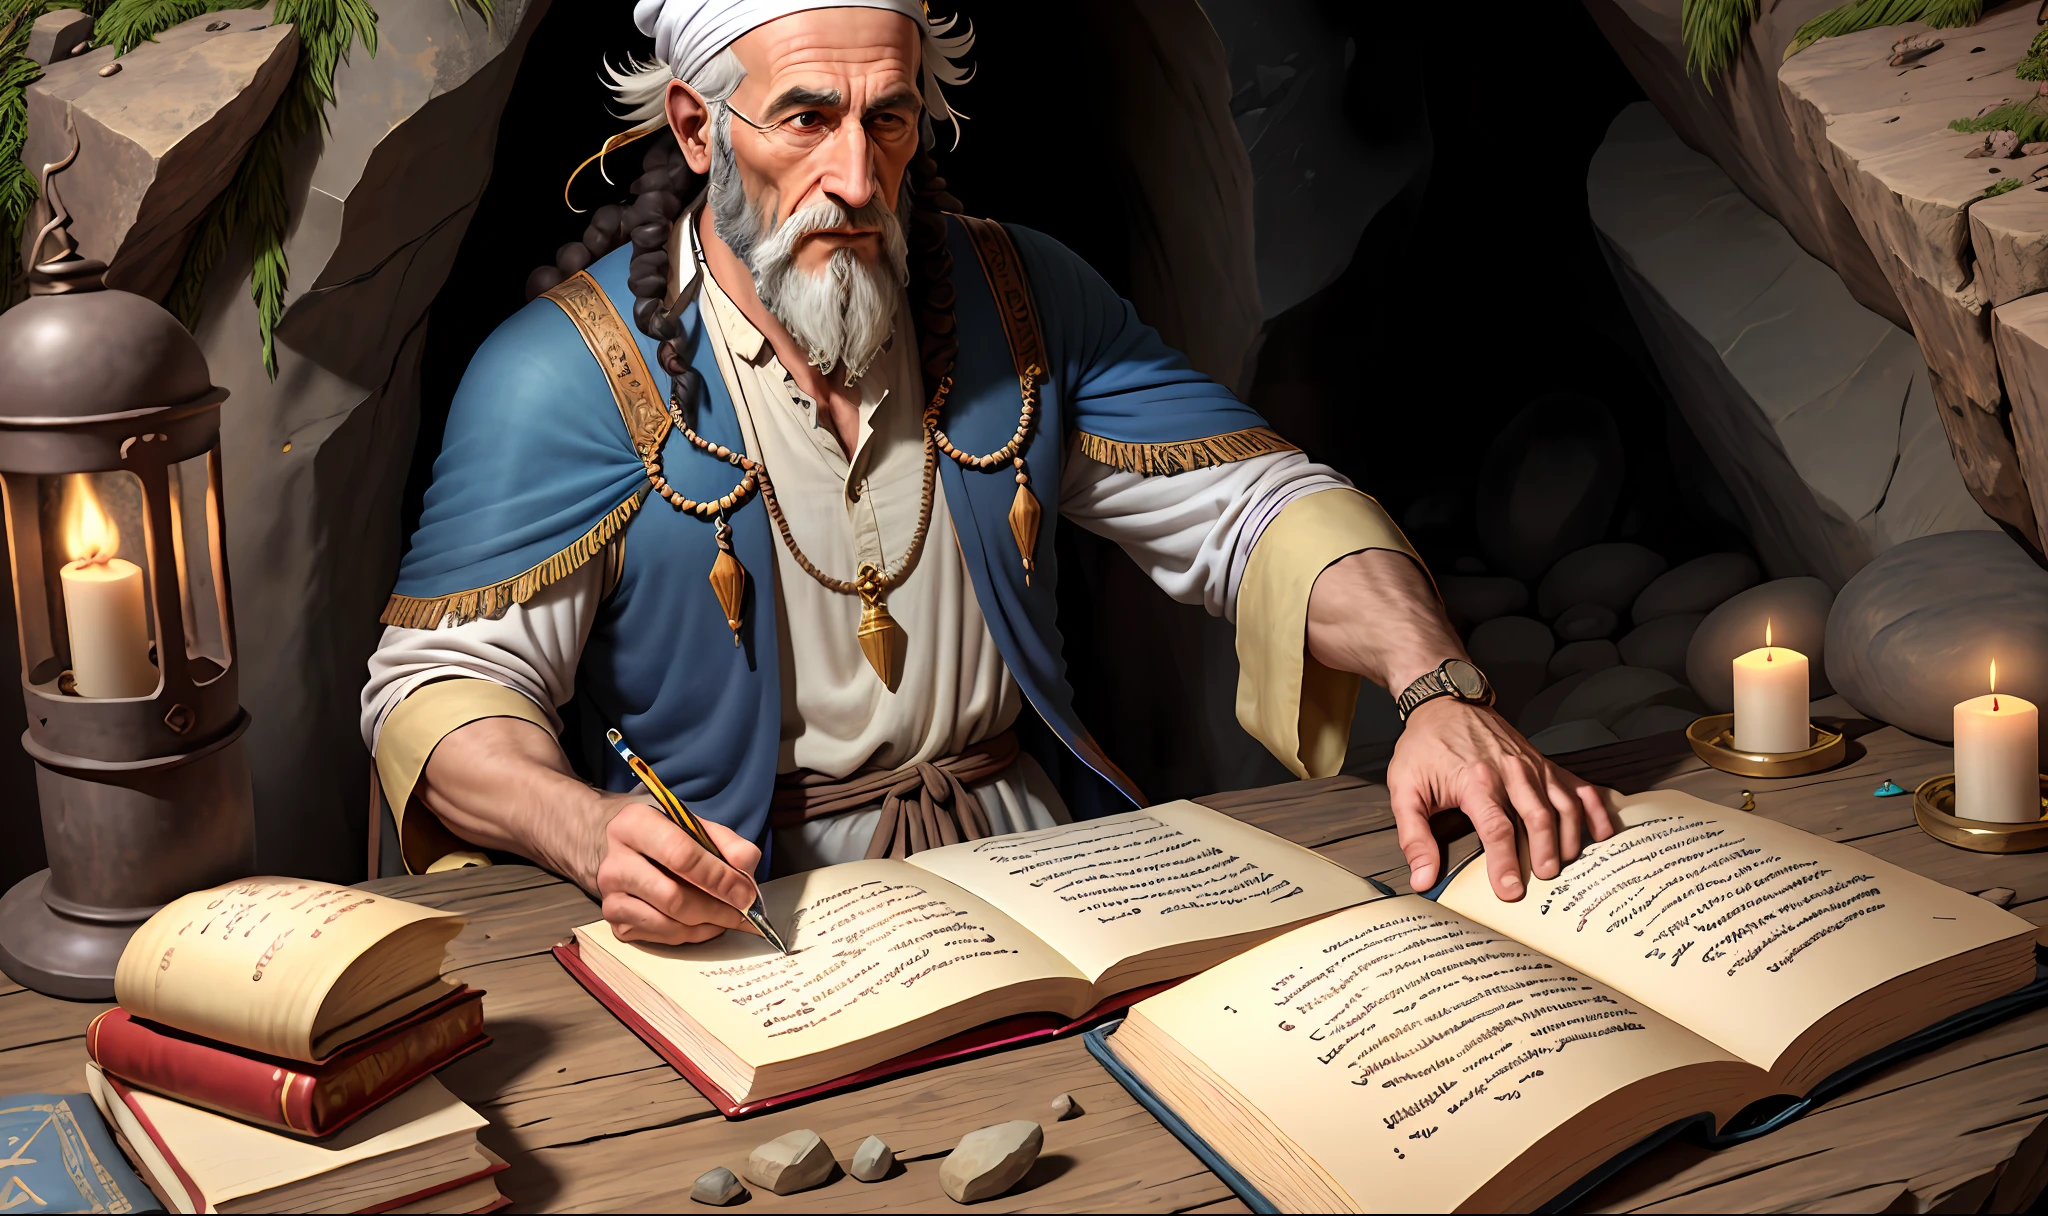 古代のイマンゲム, ユダヤ人の衣服, ユダヤ人男性, 岩だらけの洞窟で手紙を書いている老キリスト教徒。テクノロジーと極限のリアリズムを駆使している。 ((使徒ヨハネを表す像))